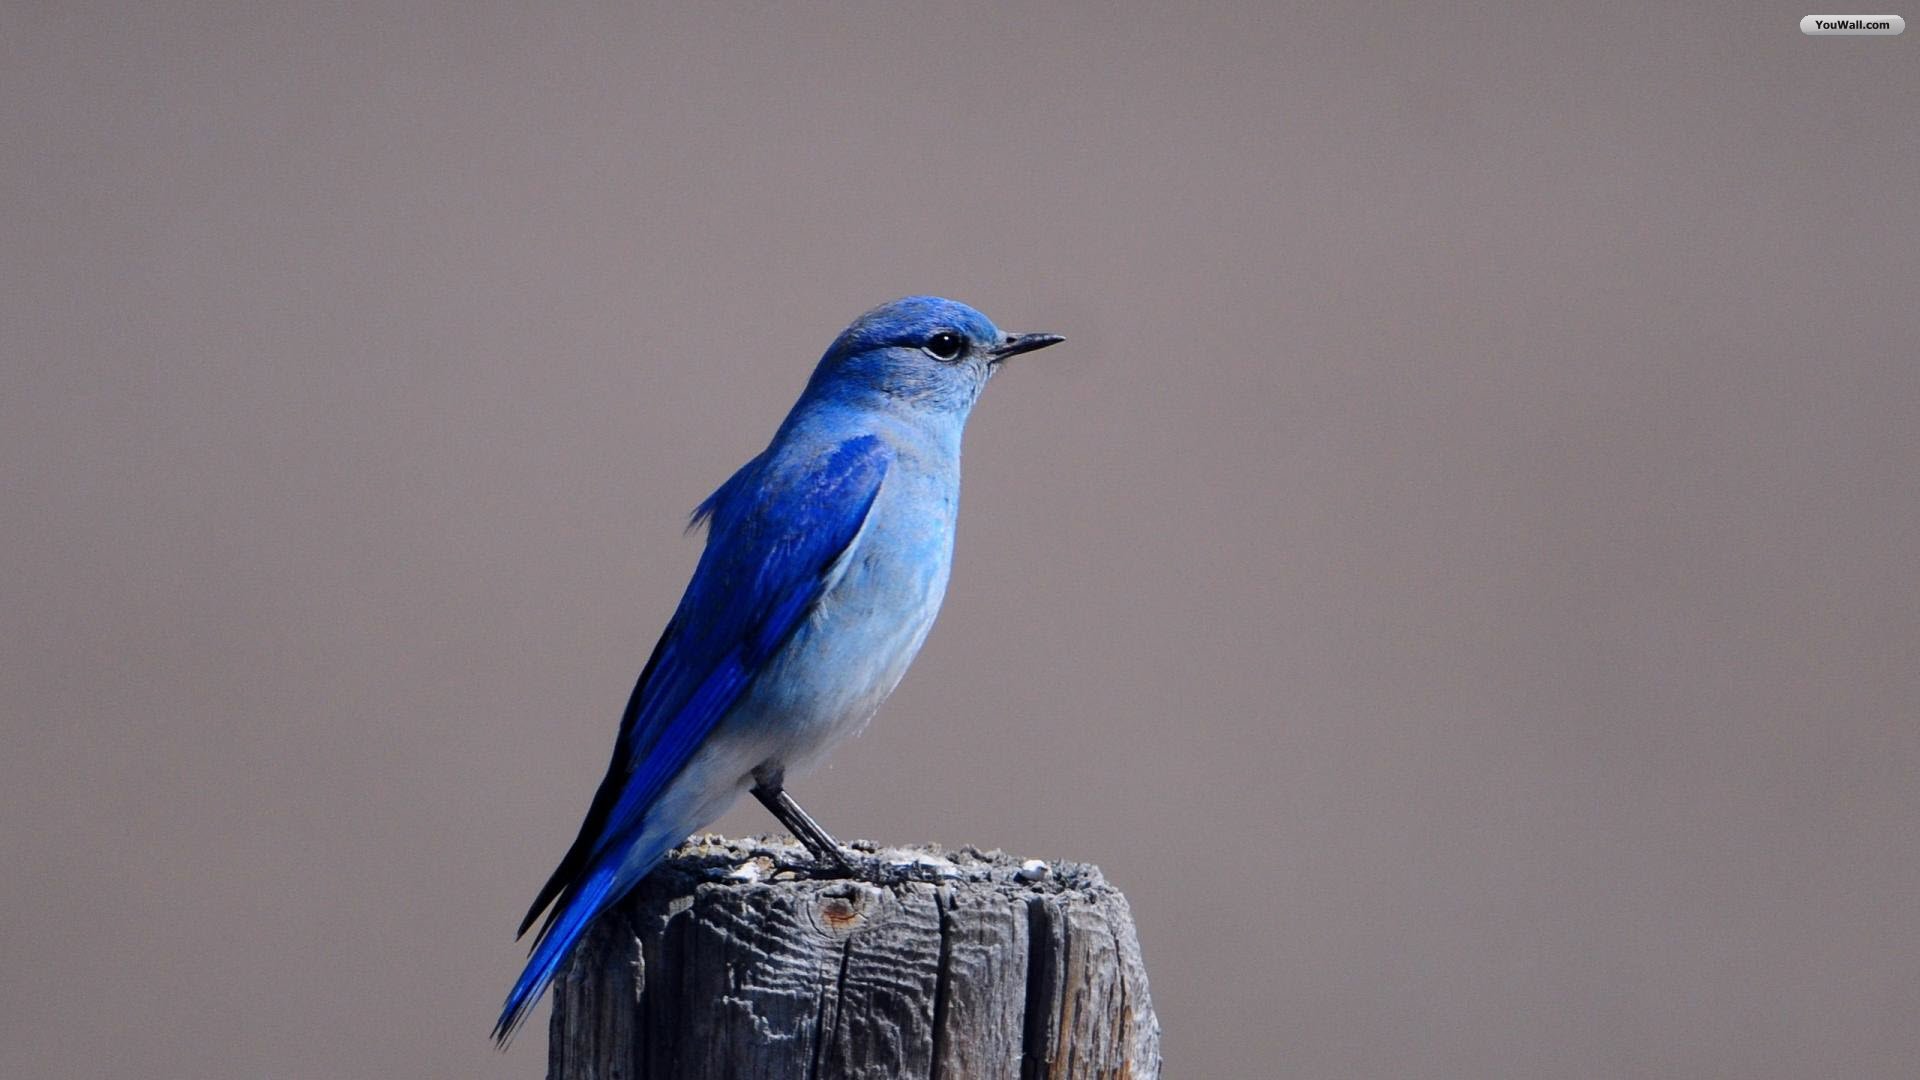 Blue Bird Wallpaper - Blue Jay Bird Iphone - HD Wallpaper 